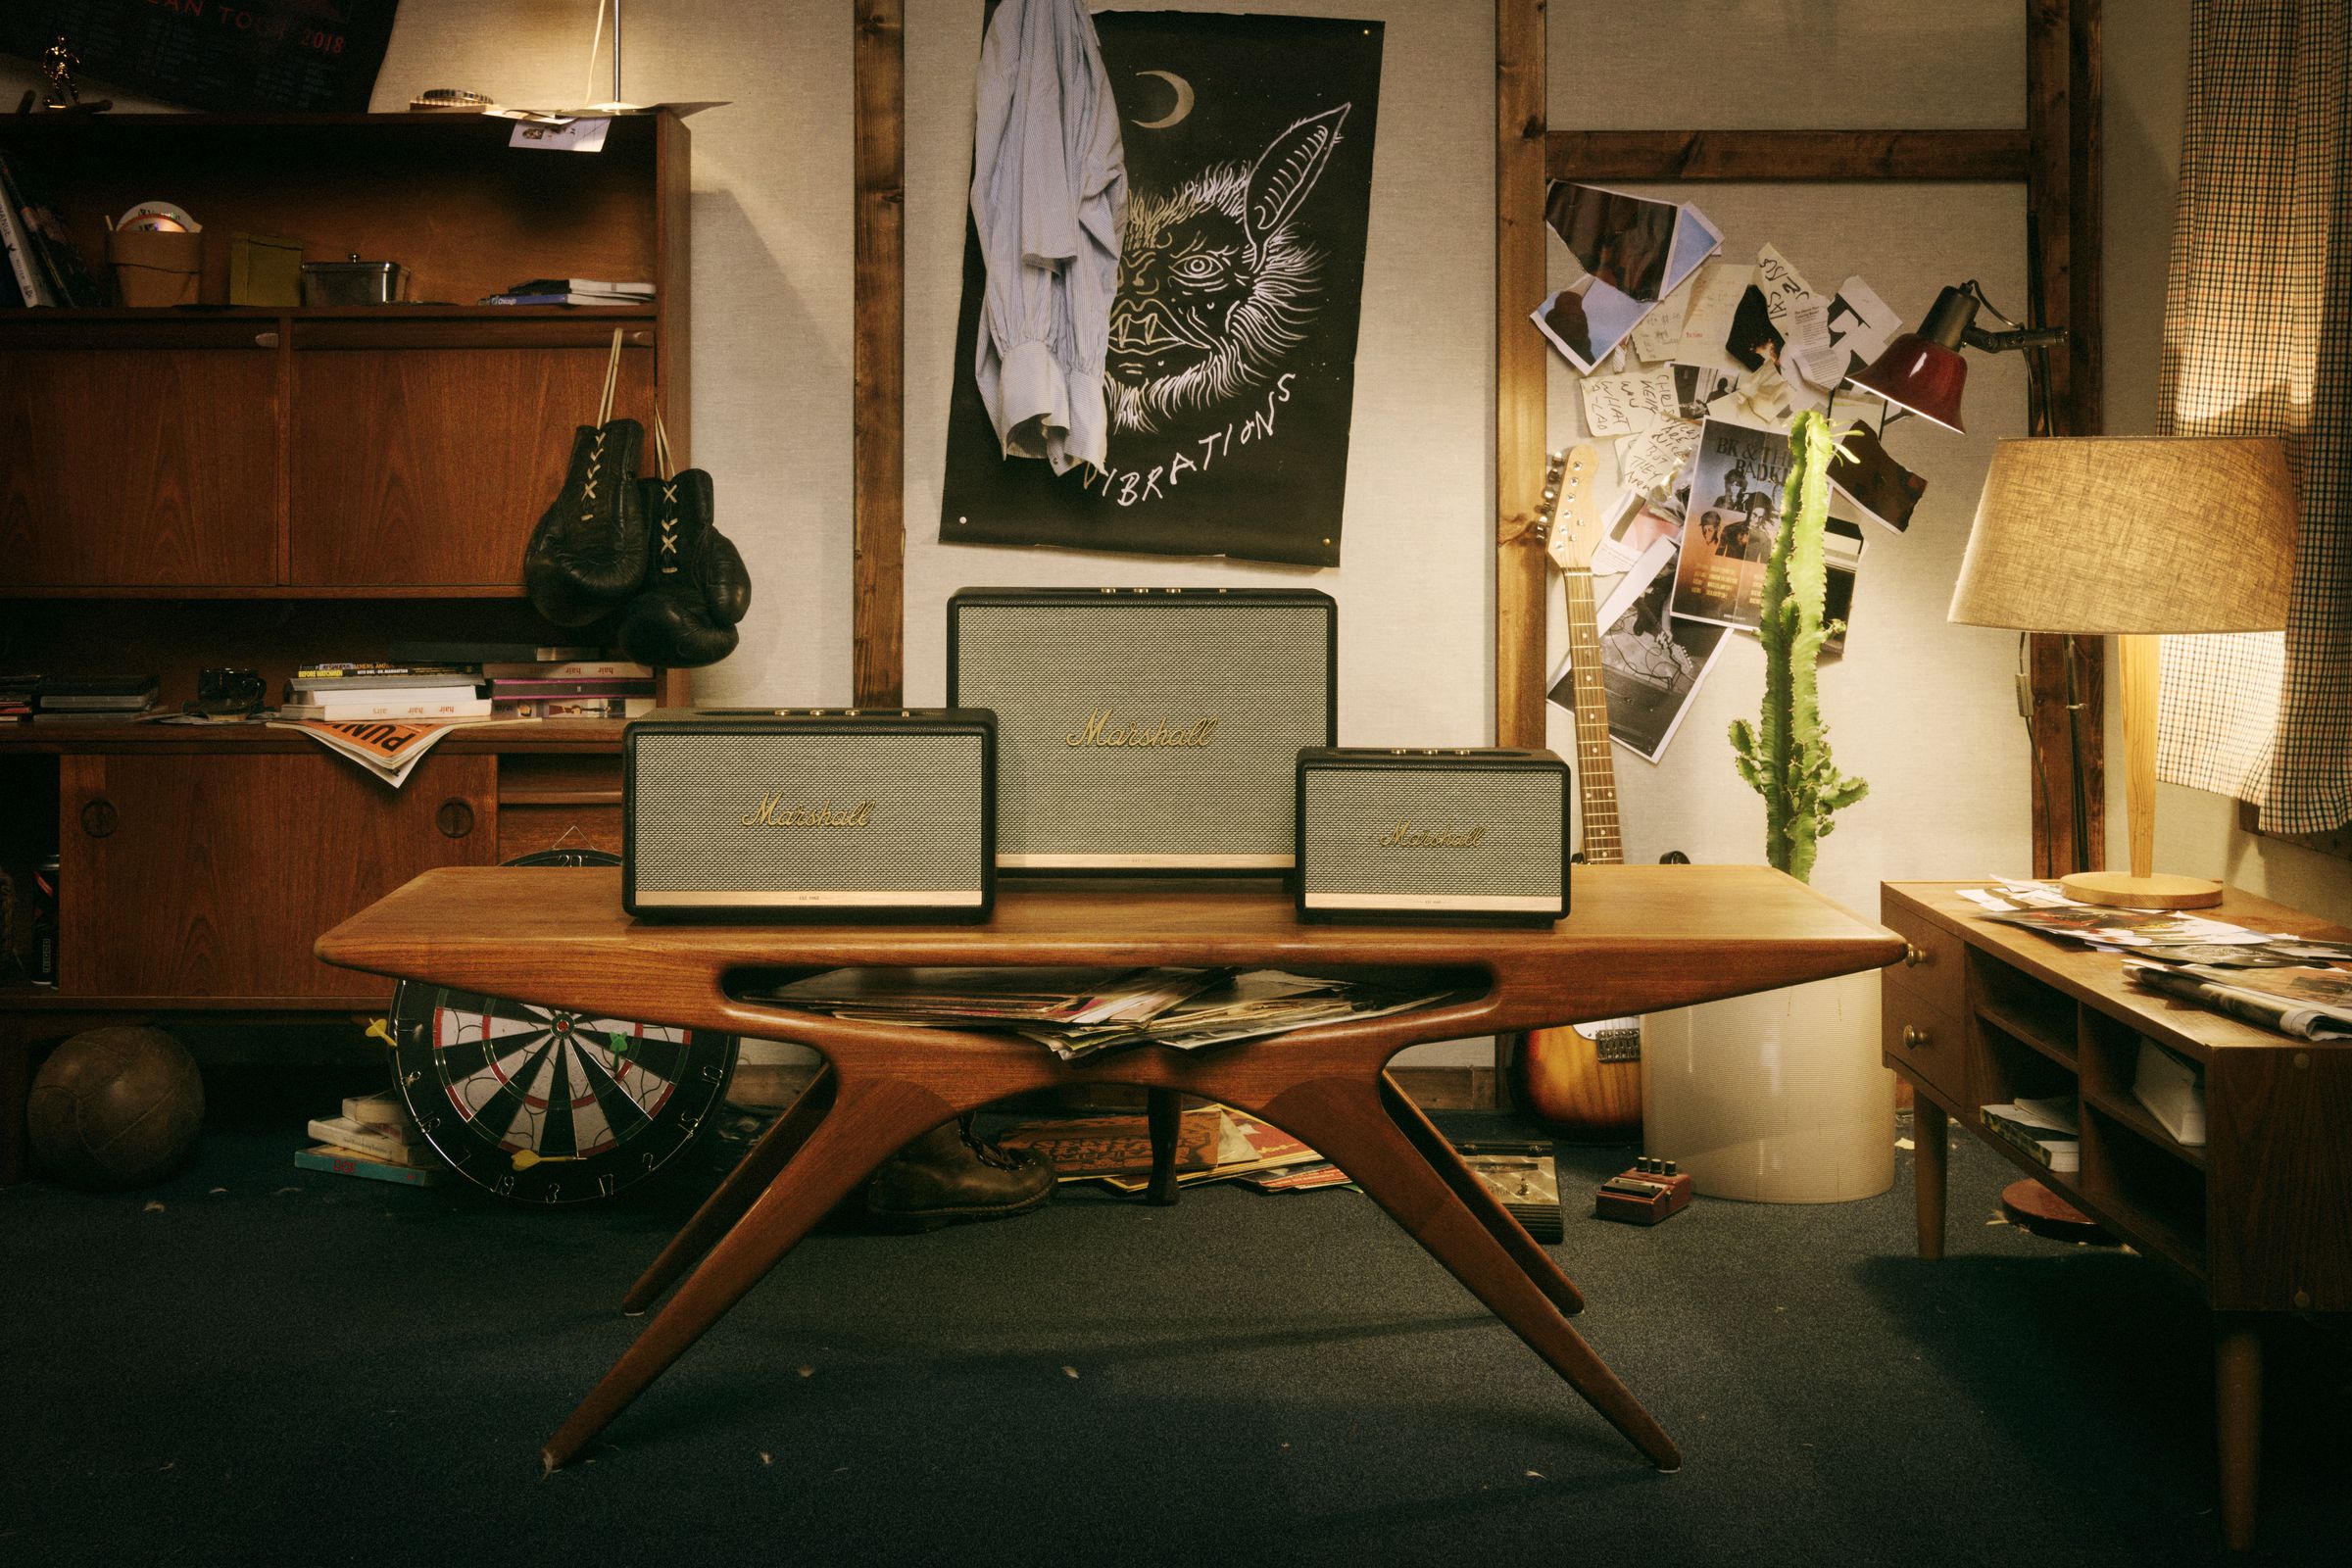 Three Marshall-branded speakers sit on a table.